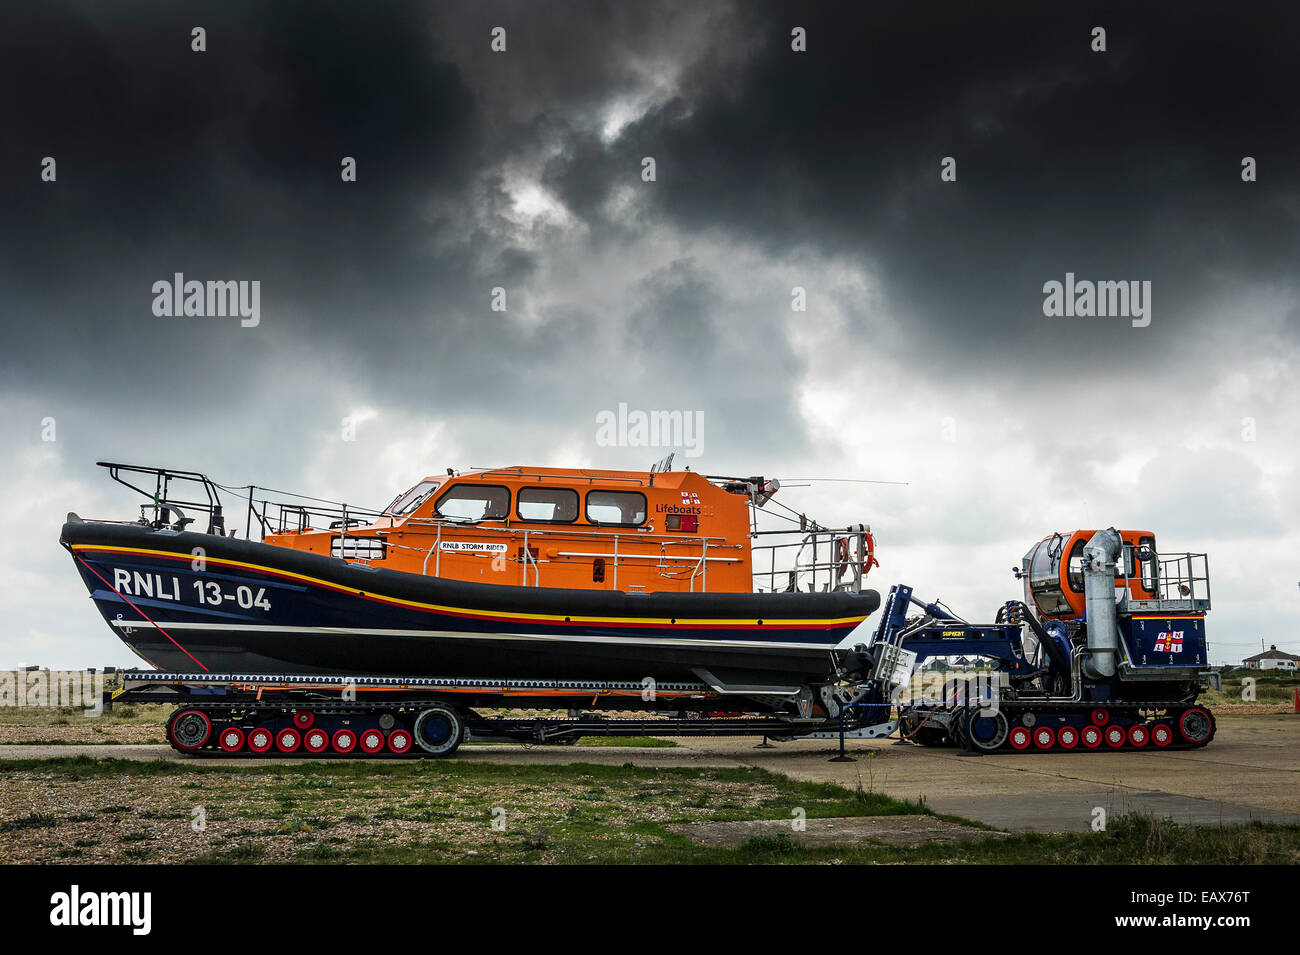 Il rilievo della classe di Shannon scialuppa di salvataggio "storm rider' su un rimorchio pronto per essere lanciato a Dungeness nel Kent. Foto Stock